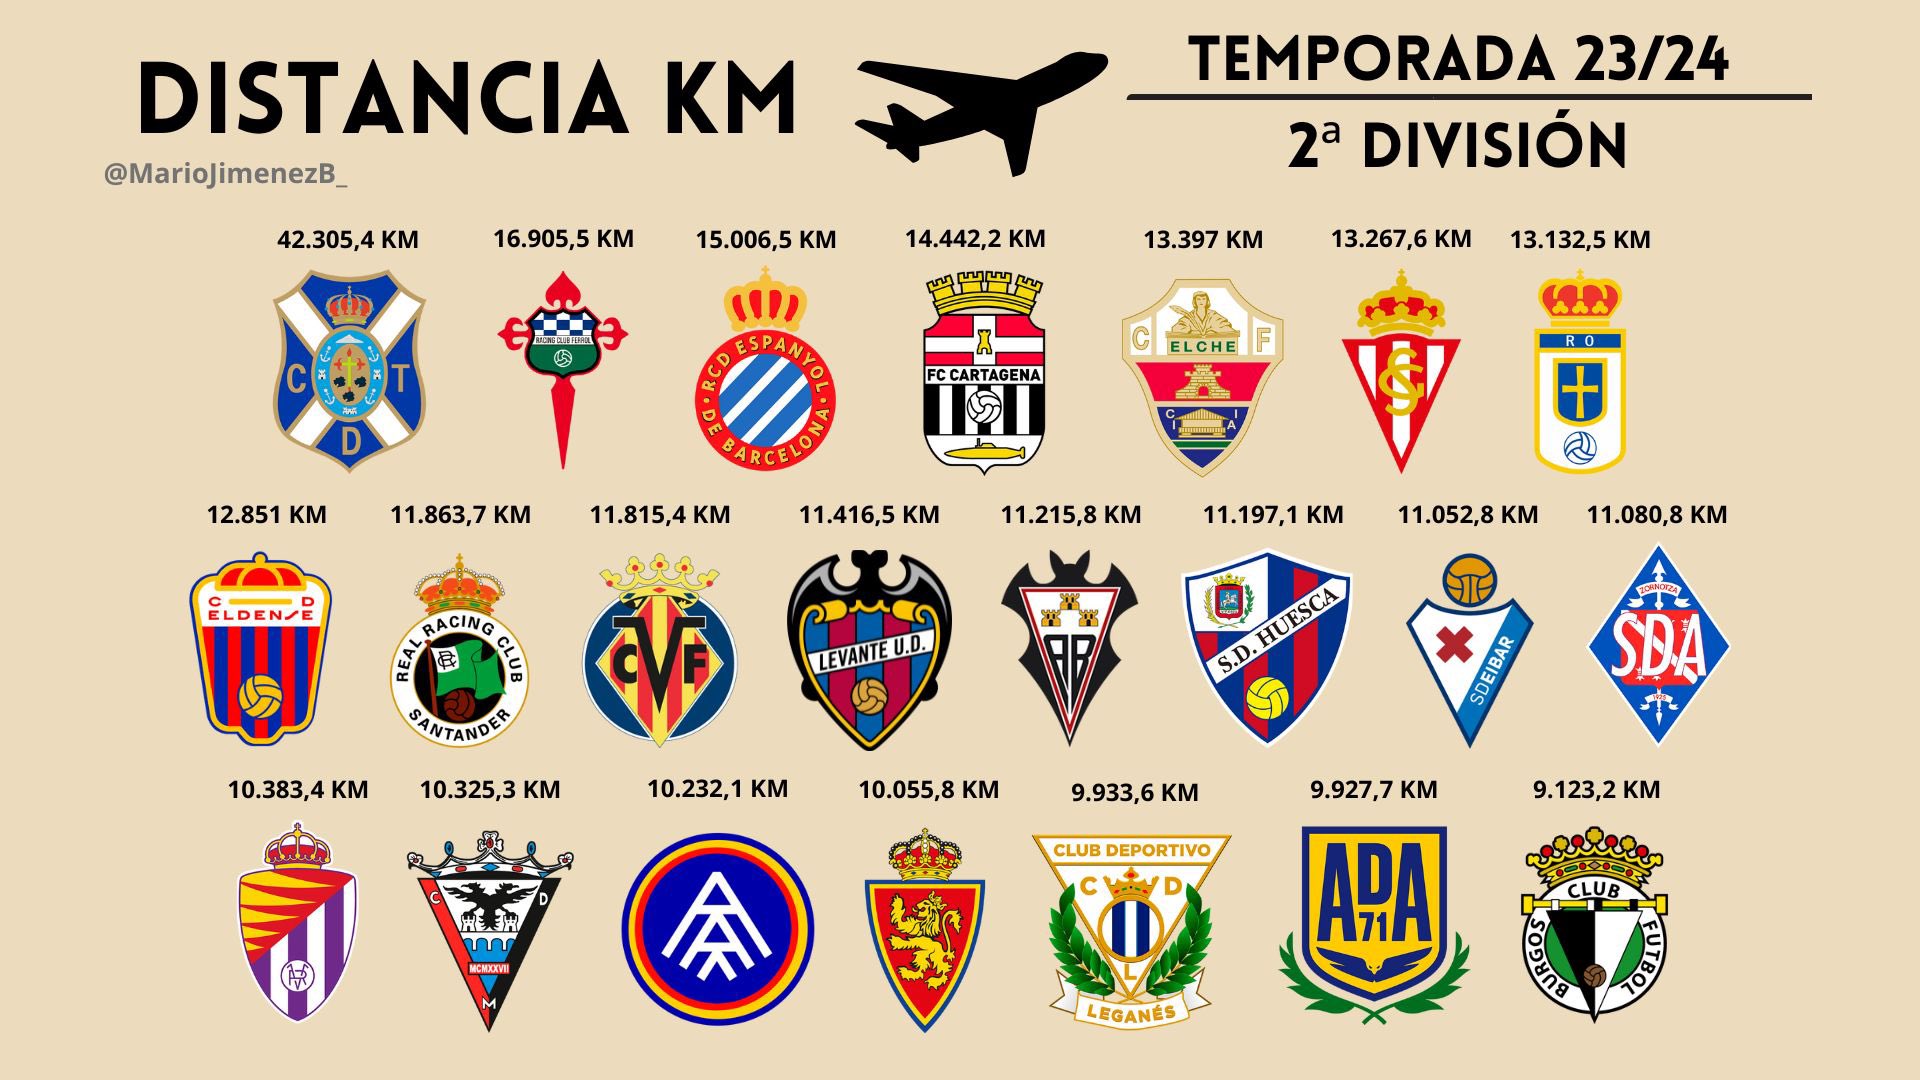 El CD Tenerife recorrerá más kilómetros que nadie en Segunda División